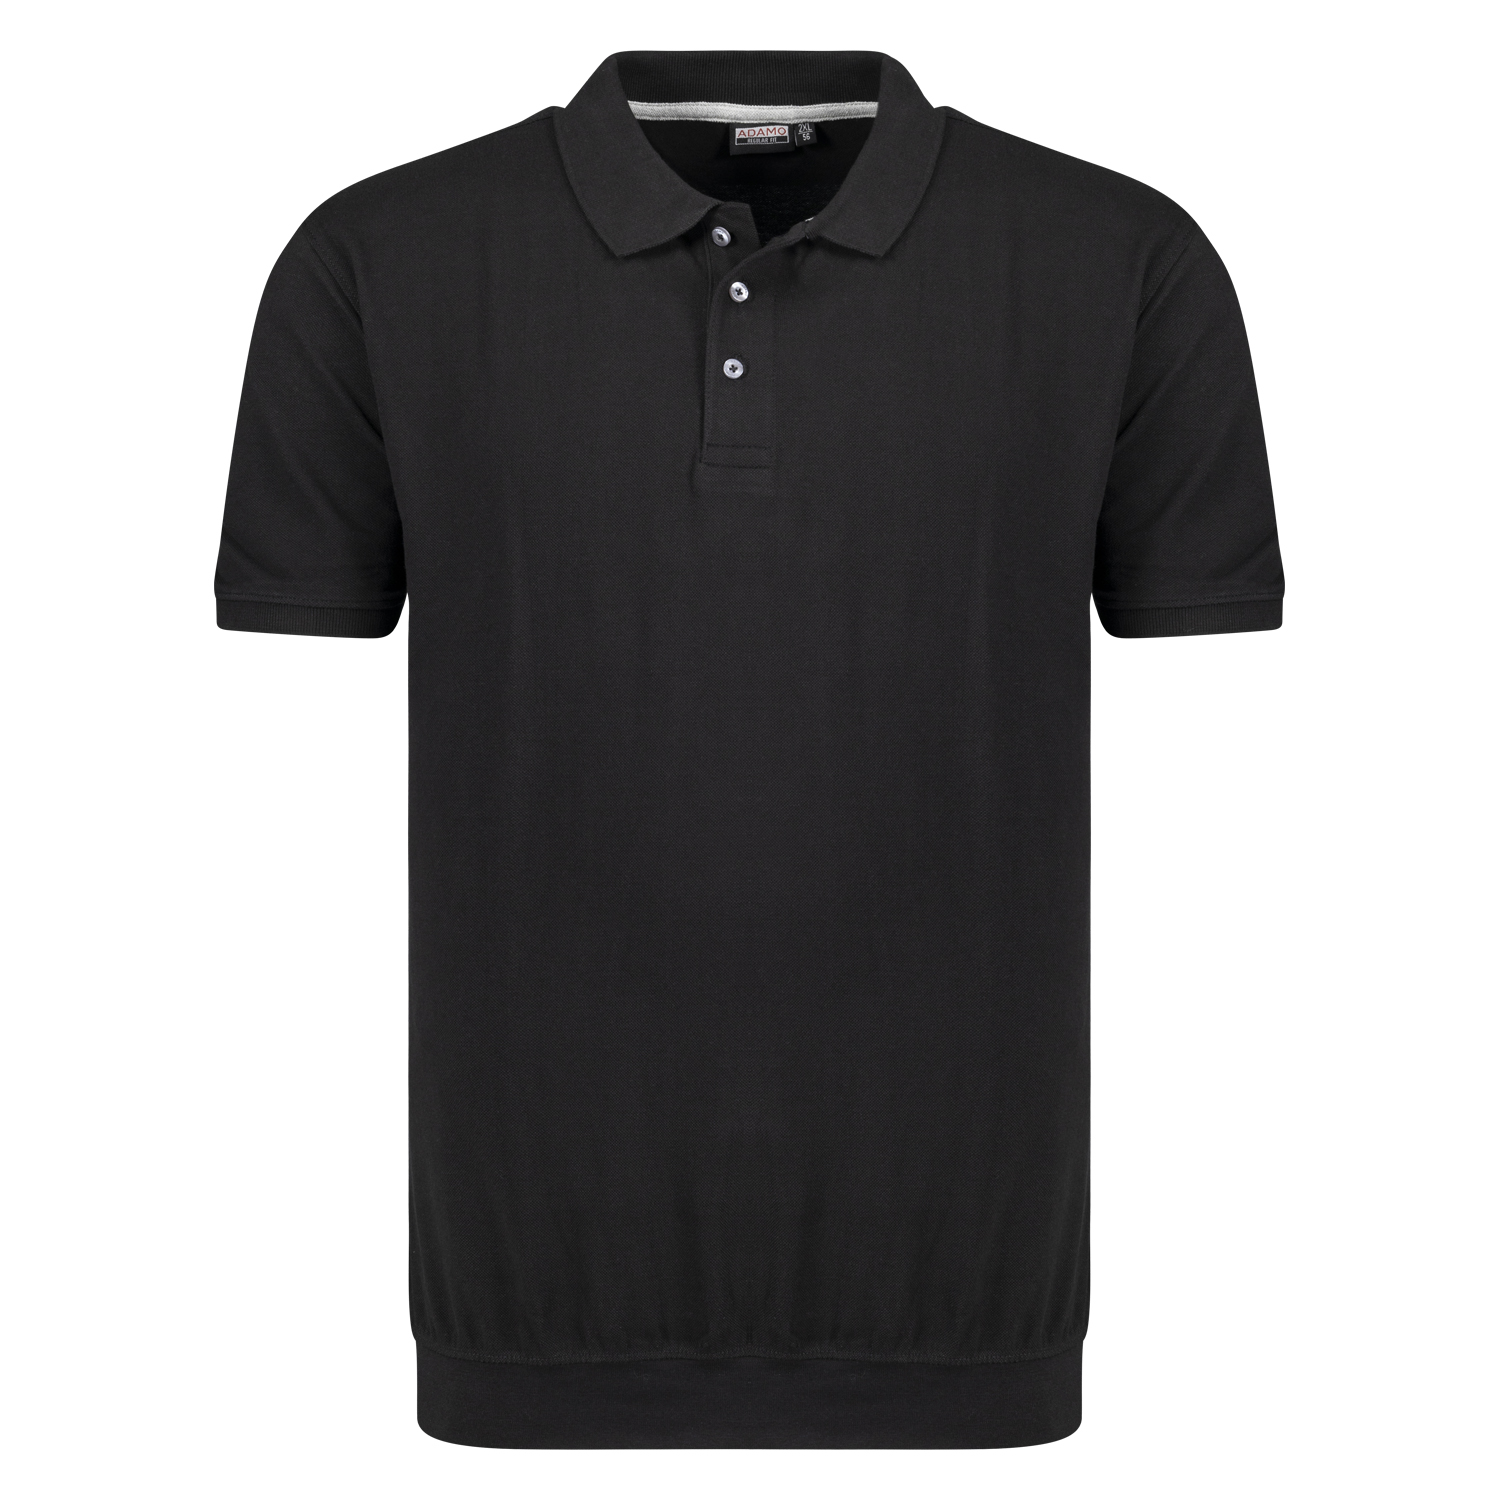 Herren Pique Poloshirt mit Bund kurzarm Serie Kadir REGULAR FIT von Adamo schwarz in Übergrößen 2XL - 10XL